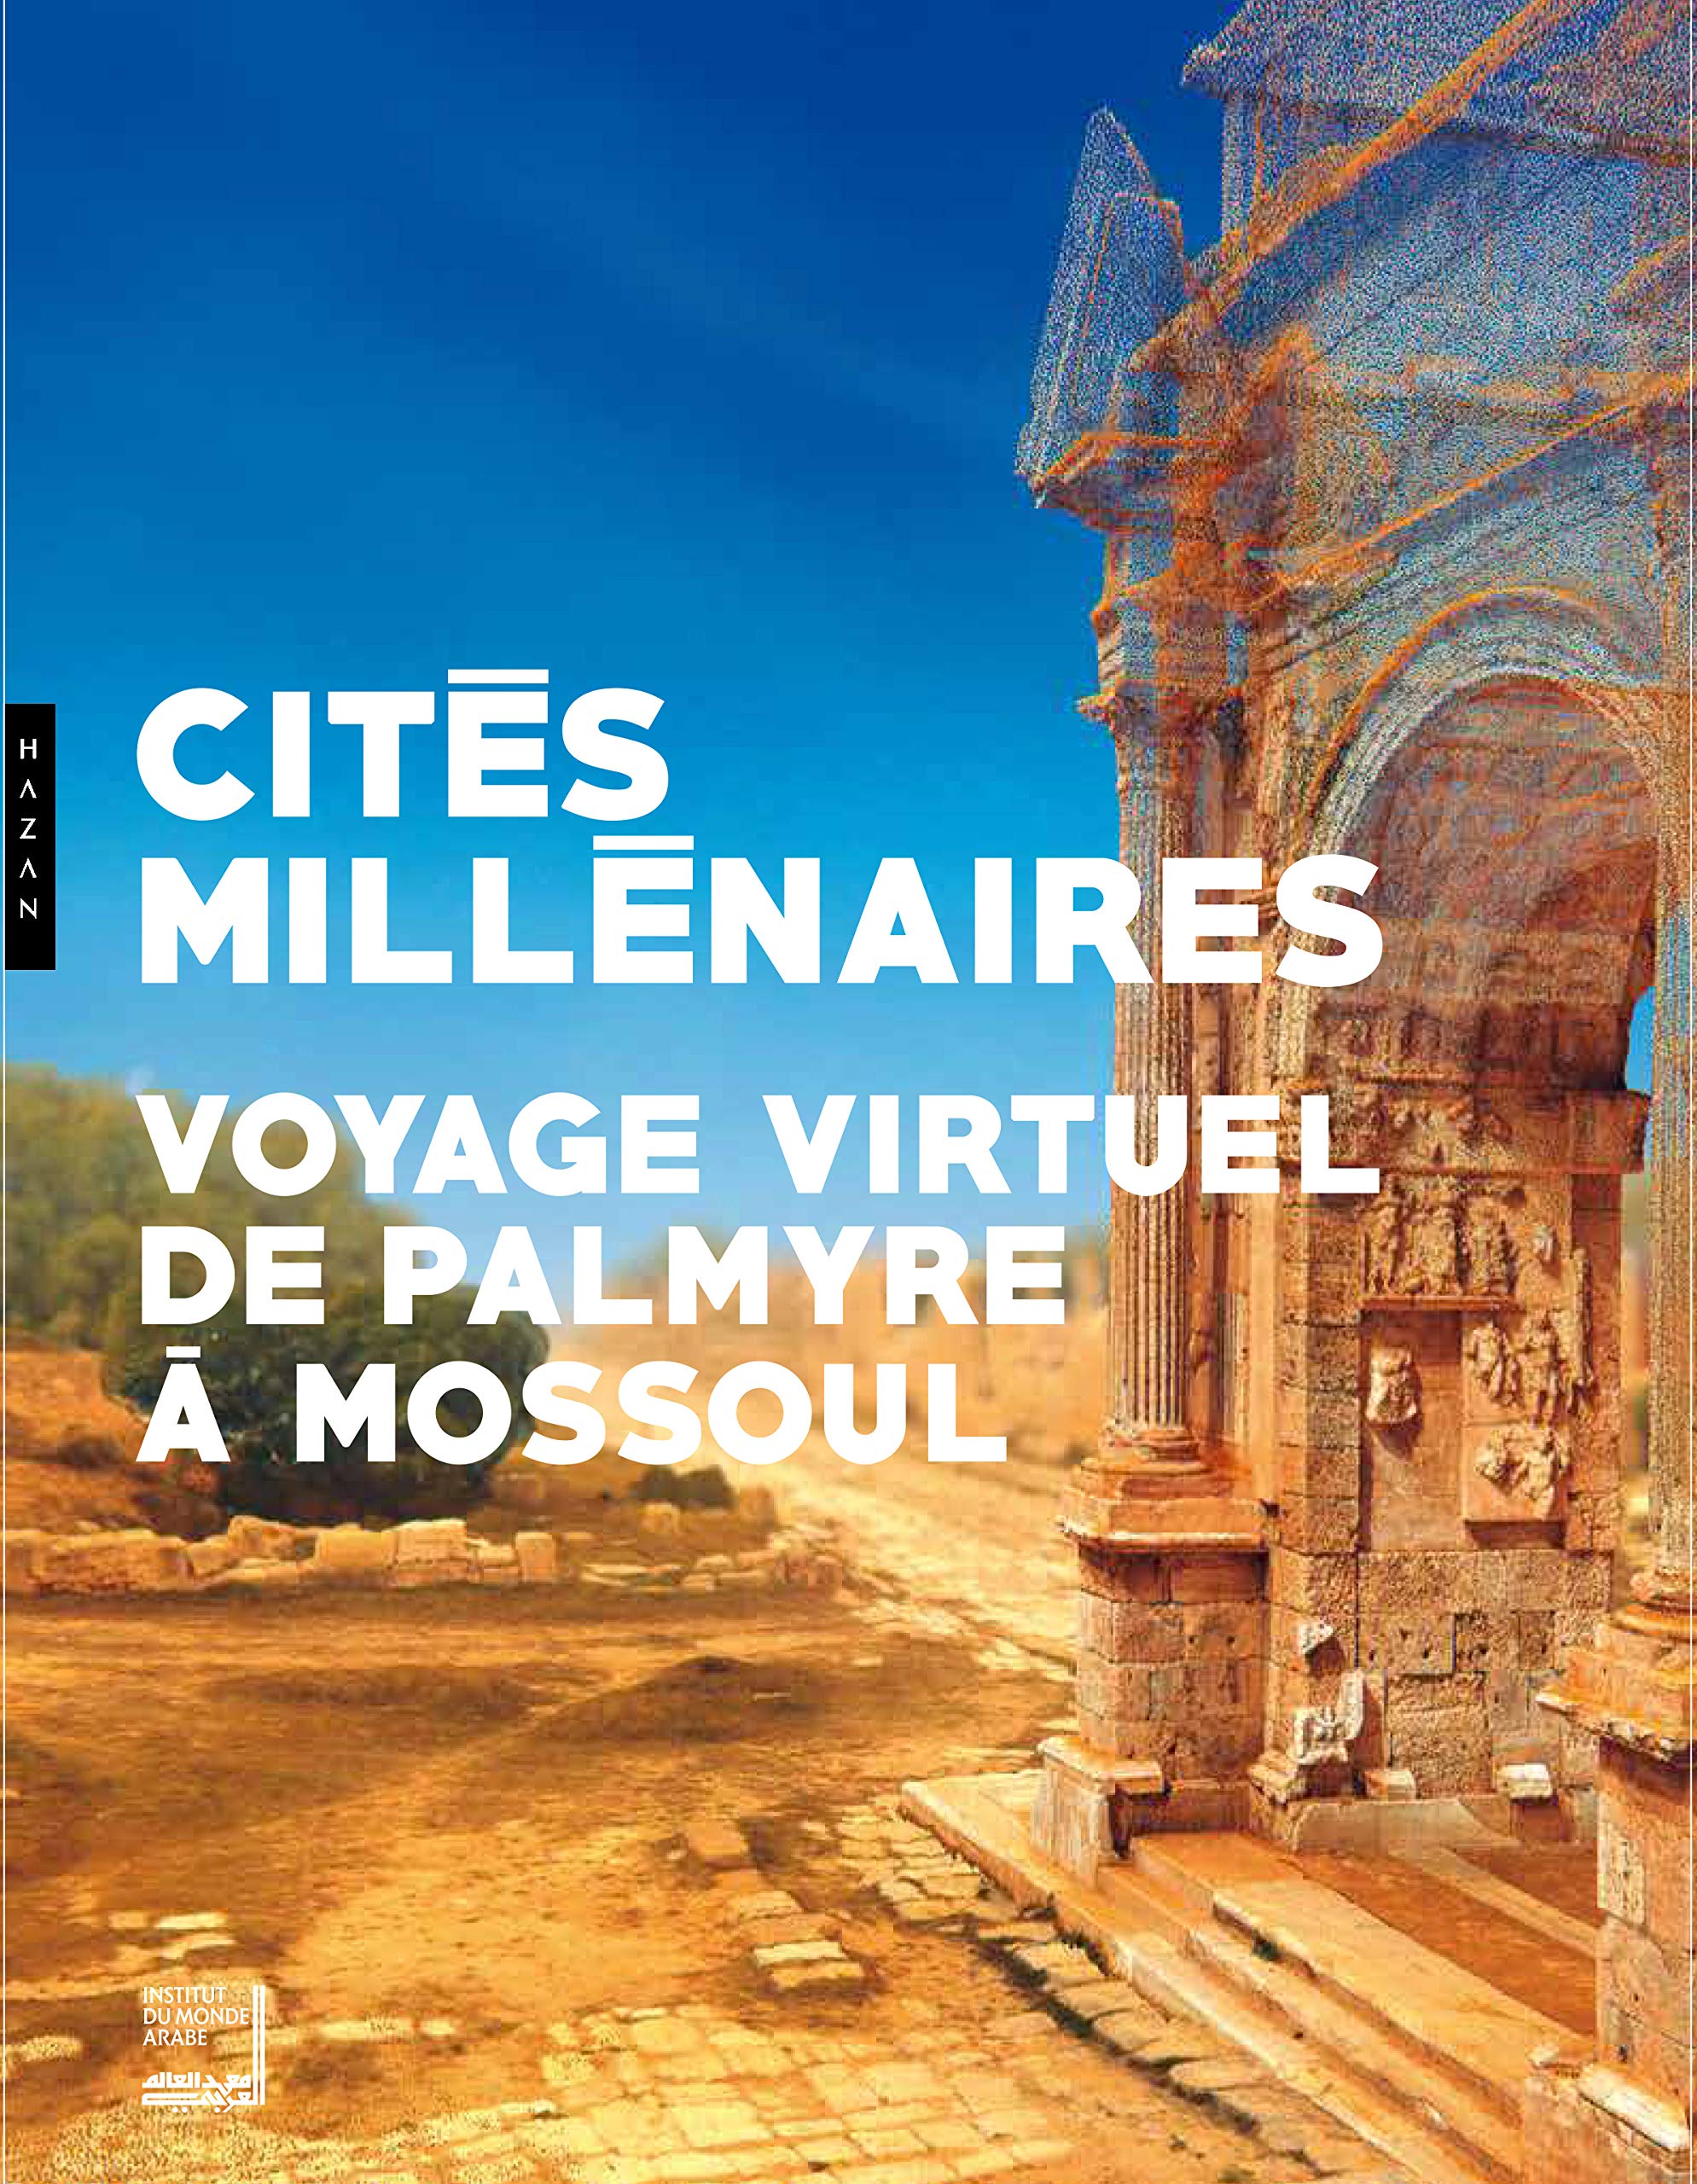 Cités millénaires. Voyage virtuel de Palmyre à Mossoul, 2018, 120 p.